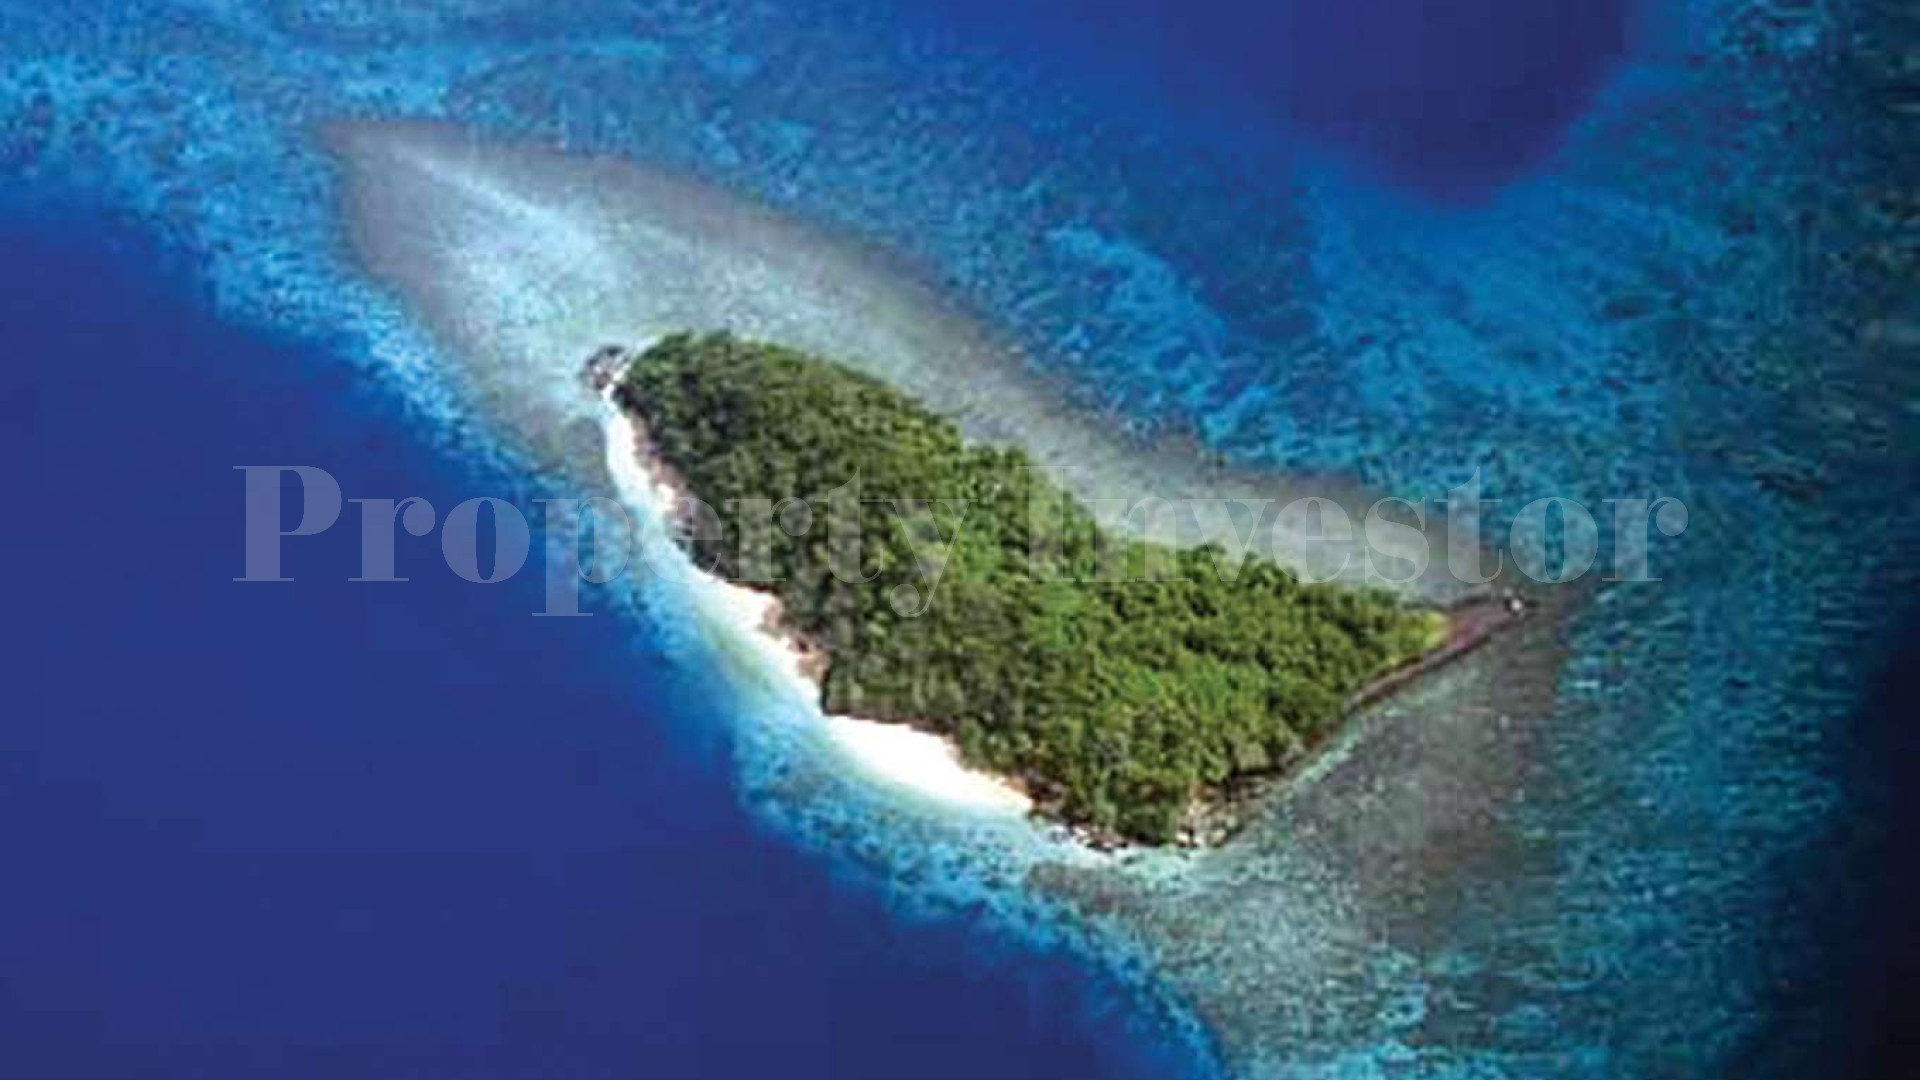 Продается частный дикий остров 3,2 га на Фиджи